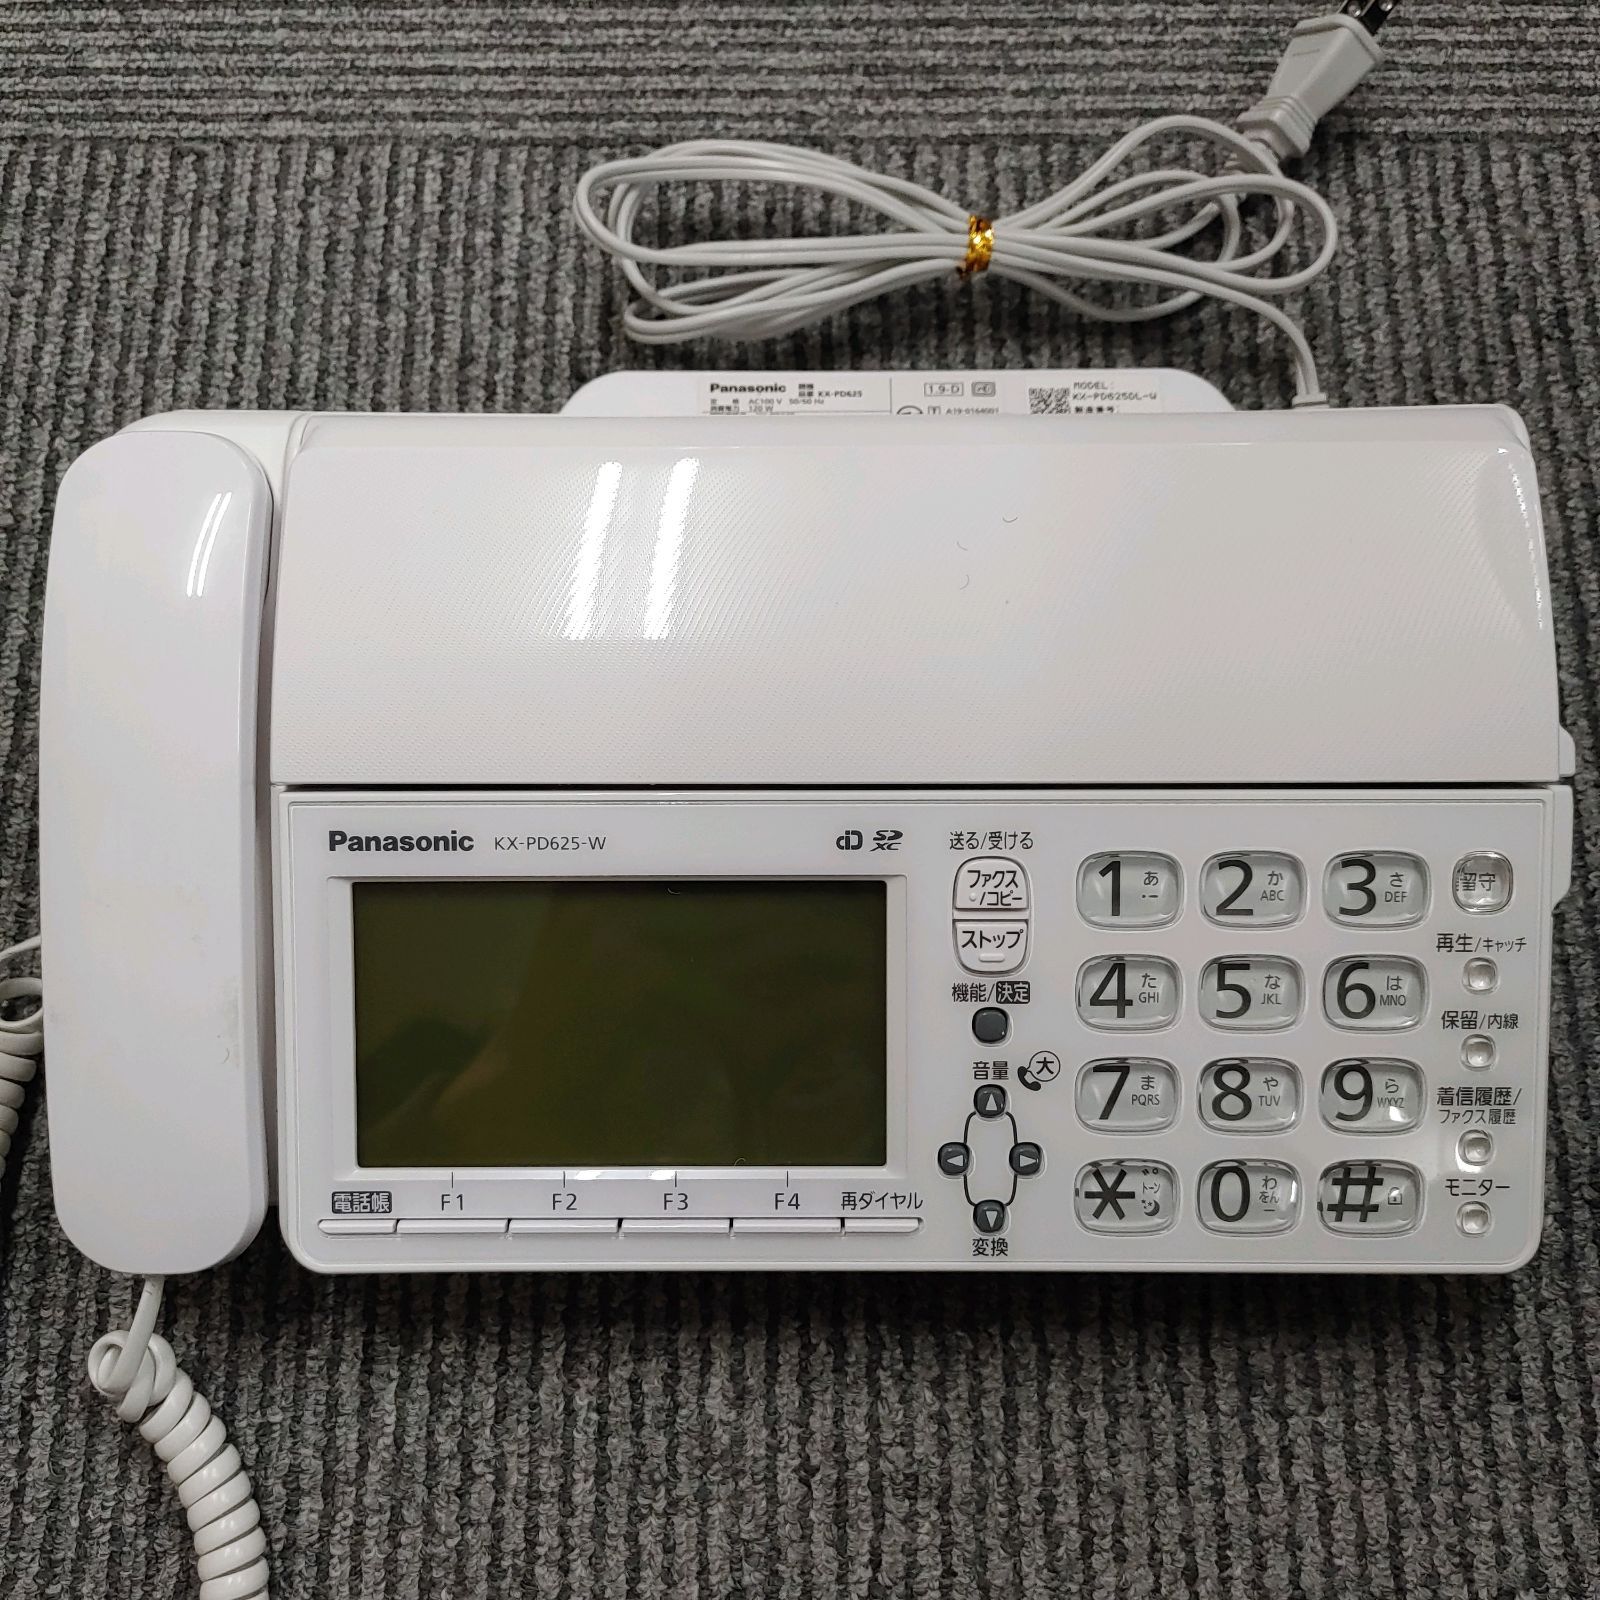 デジタルコードレスファクス Panasonic KX-PD625(子機1台付き) - メルカリ